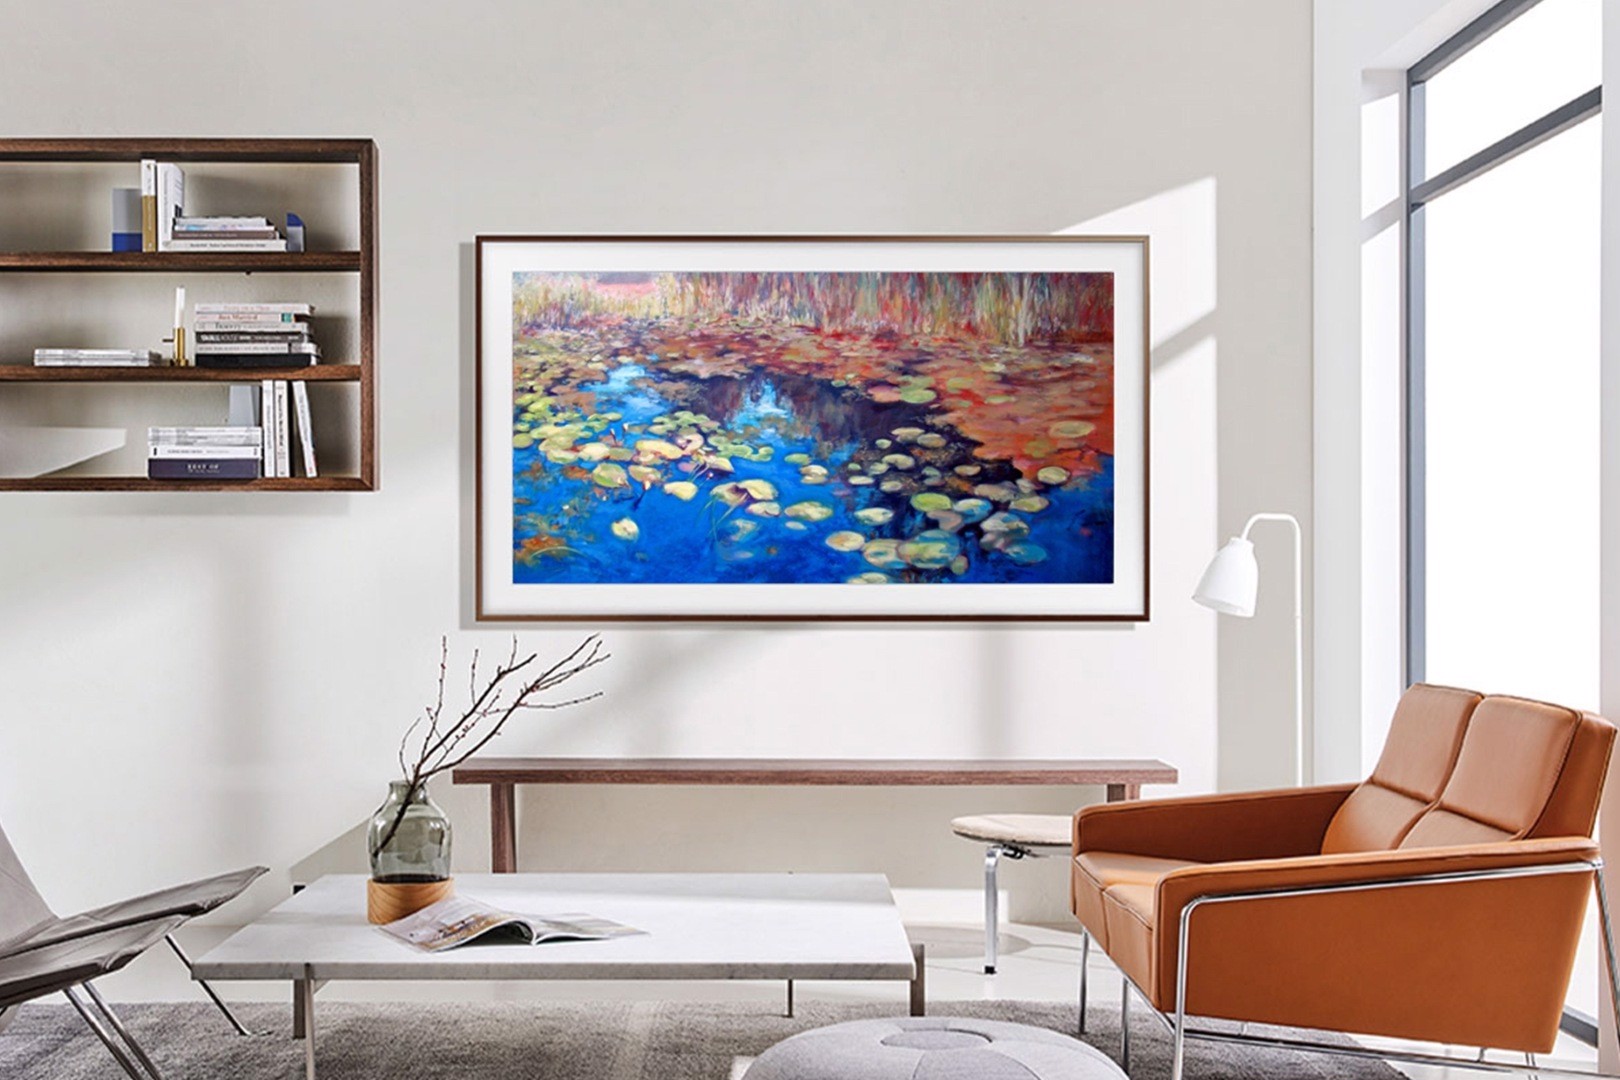 Samsung The Frame: טלוויזיה כאמנות בביתך